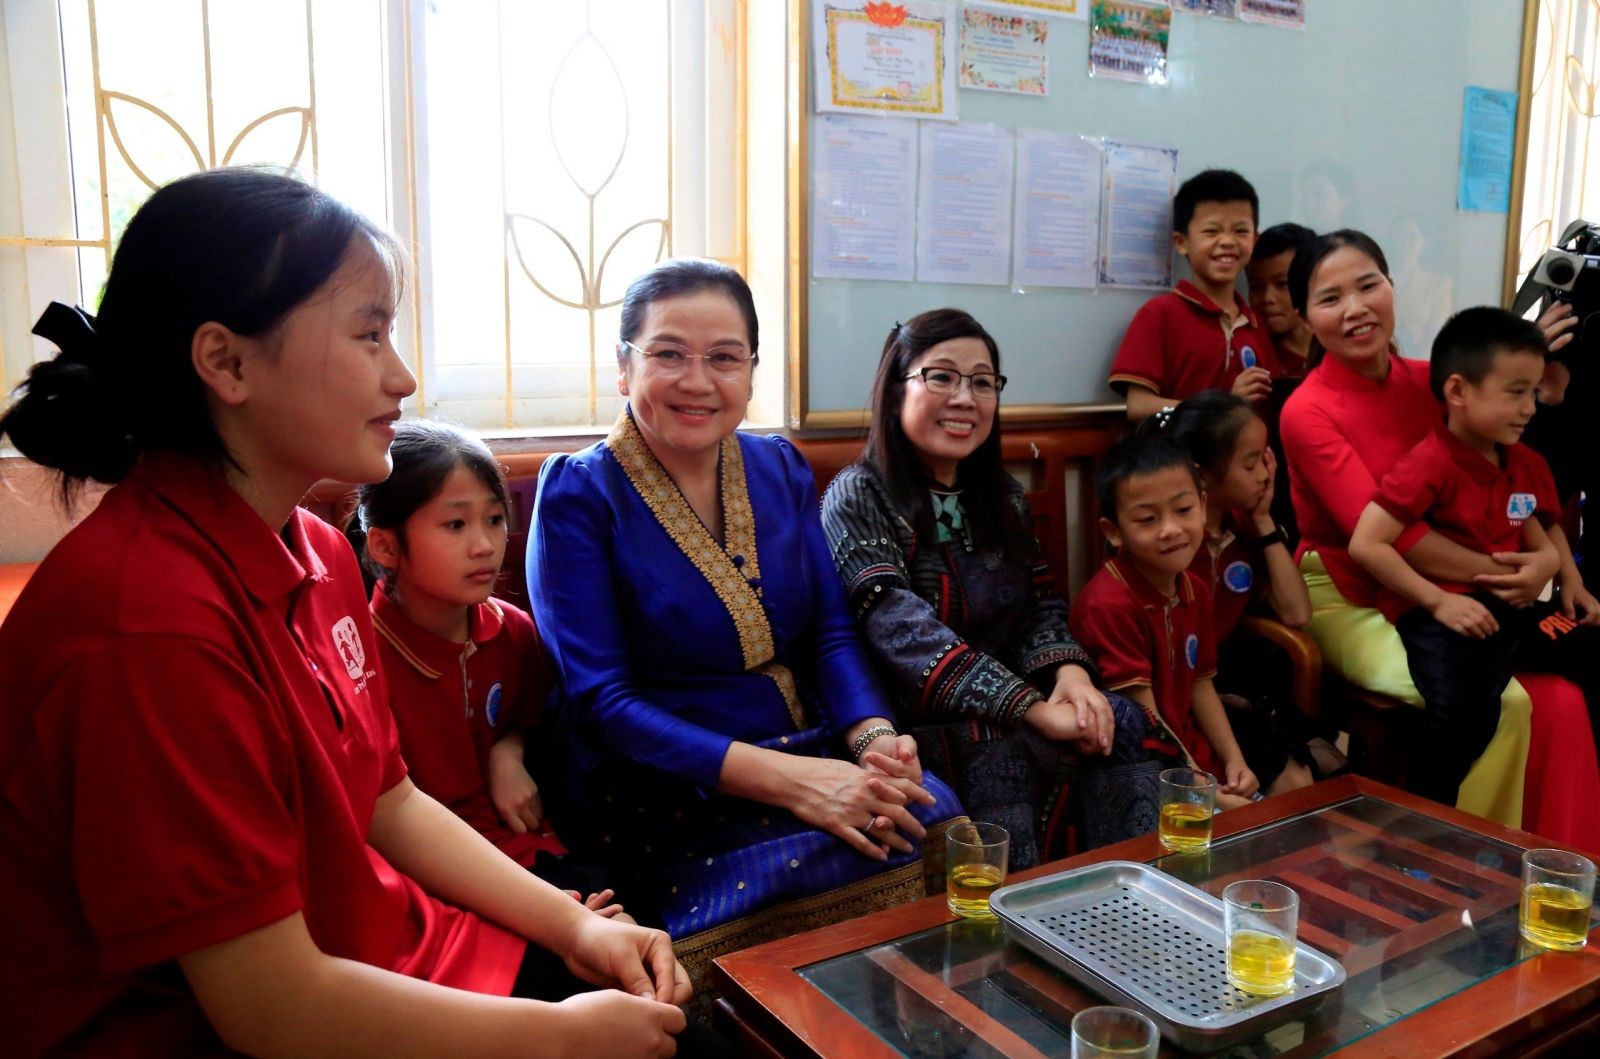 Thành lập năm 2013, làng trẻ em SOS Thái Bình có nhiệm vụ tiếp nhận, nuôi dưỡng, giáo dục, đồng thời phát hiện và bồi dưỡng năng khiếu của trẻ, tiến hành hướng nghiệp và tạo điều kiện cho trẻ phát triển toàn diện. Hiện làng đang nuôi dưỡng 136 trẻ em.